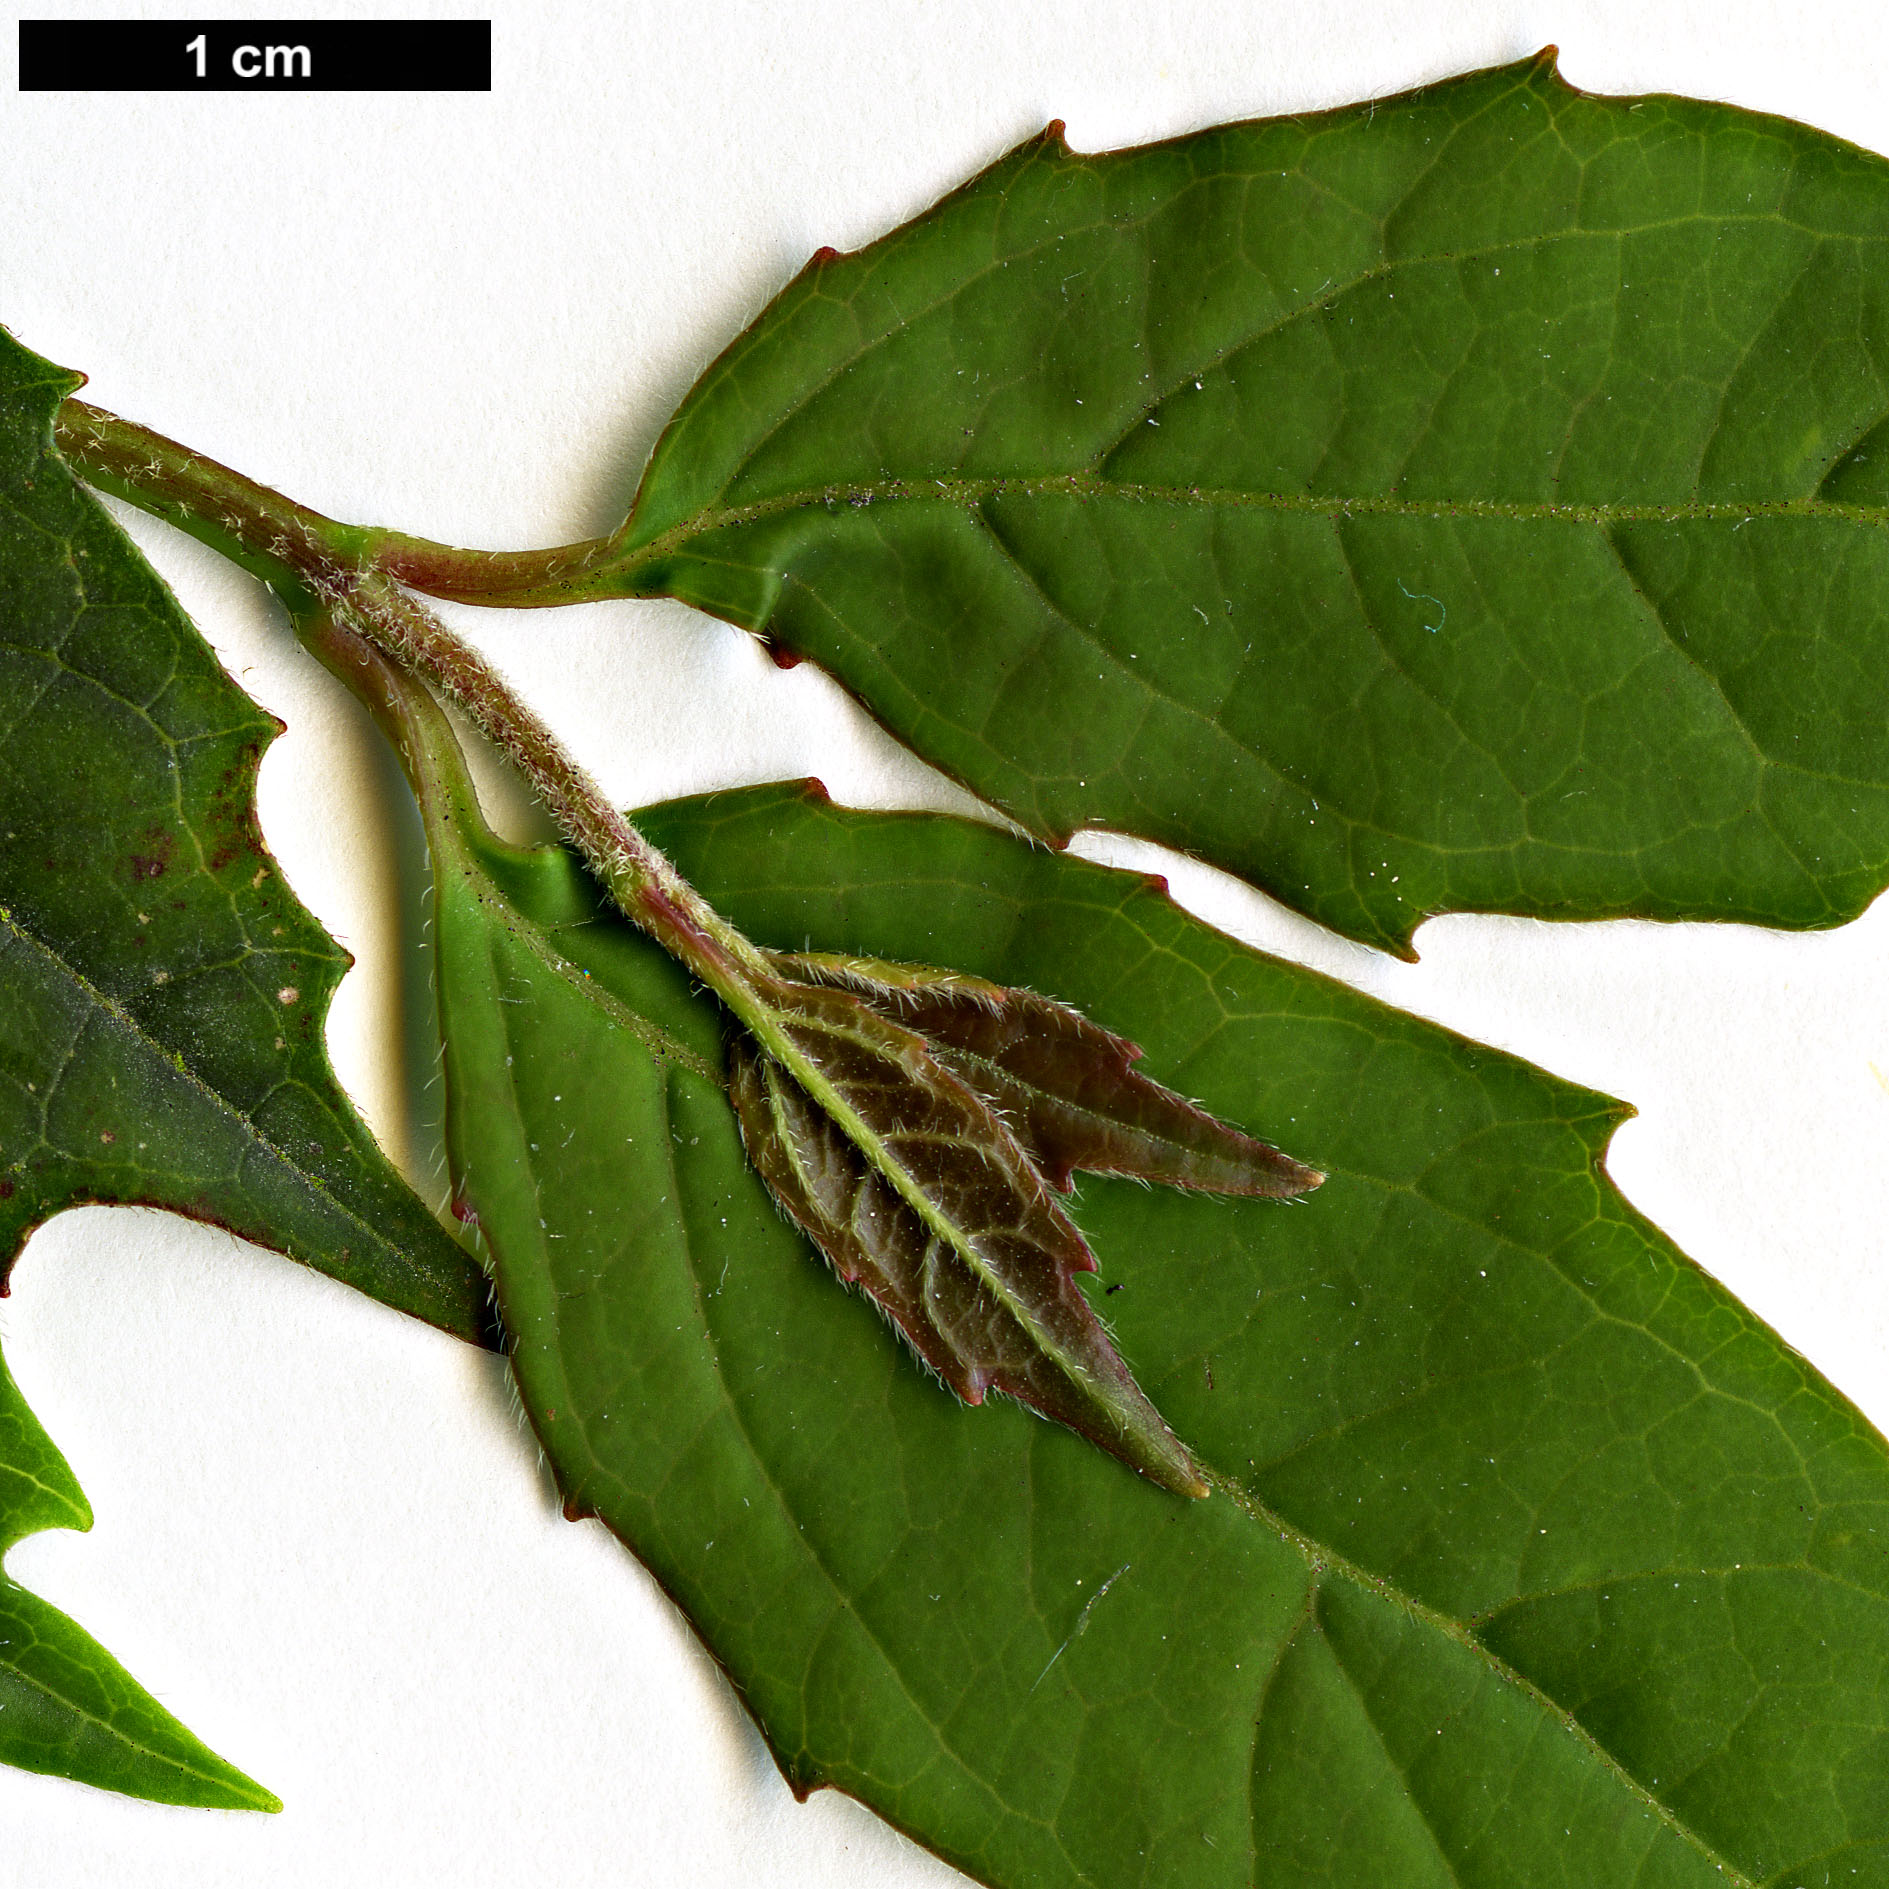 High resolution image: Family: Adoxaceae - Genus: Viburnum - Taxon: costaricanum